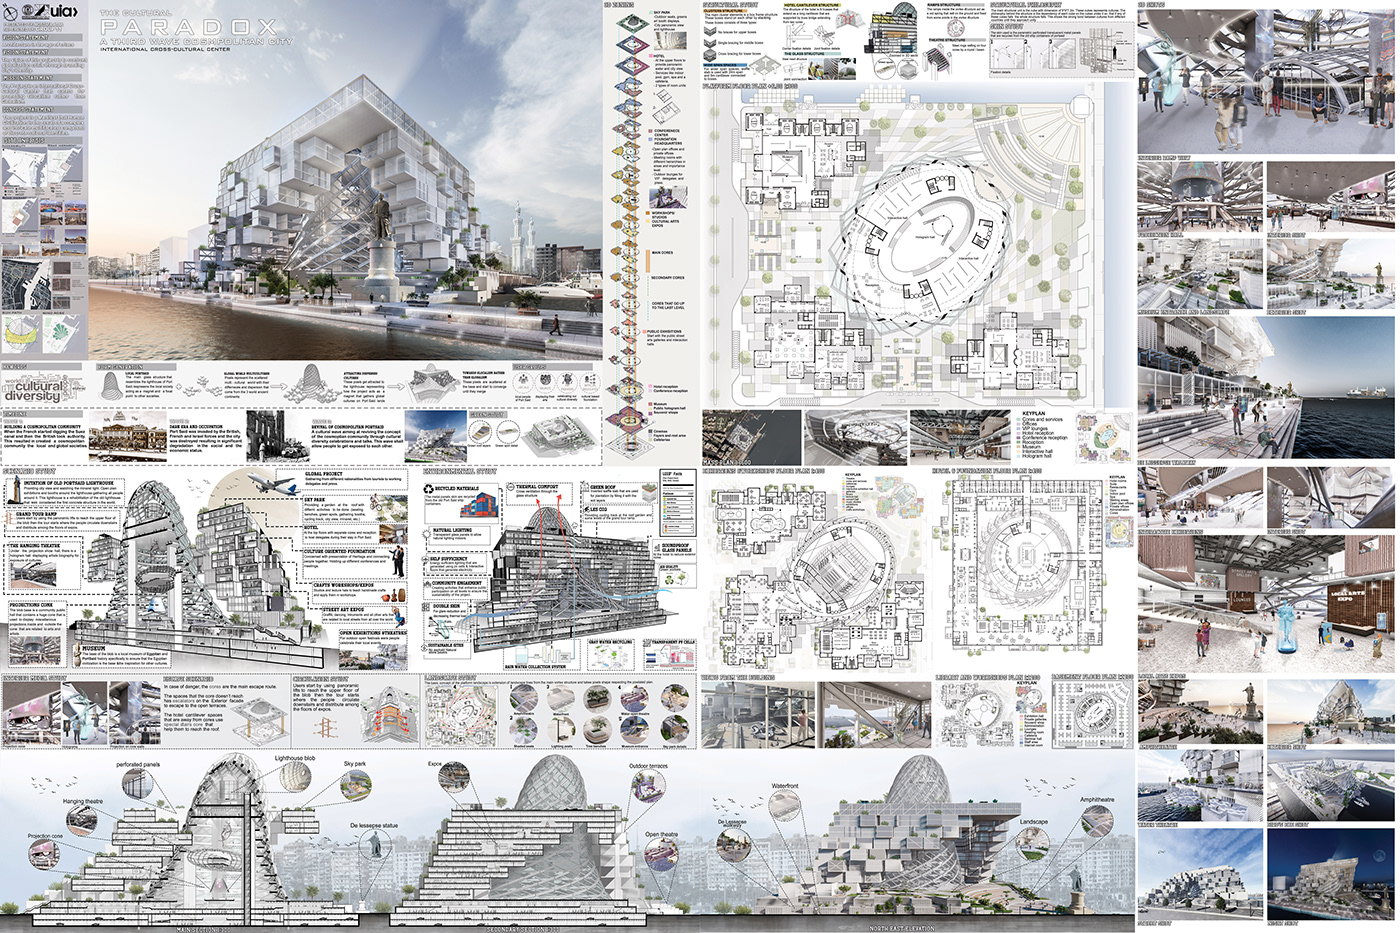 graduation project architecture design port said Cairo University cultural center concept avant-garde city rebranding